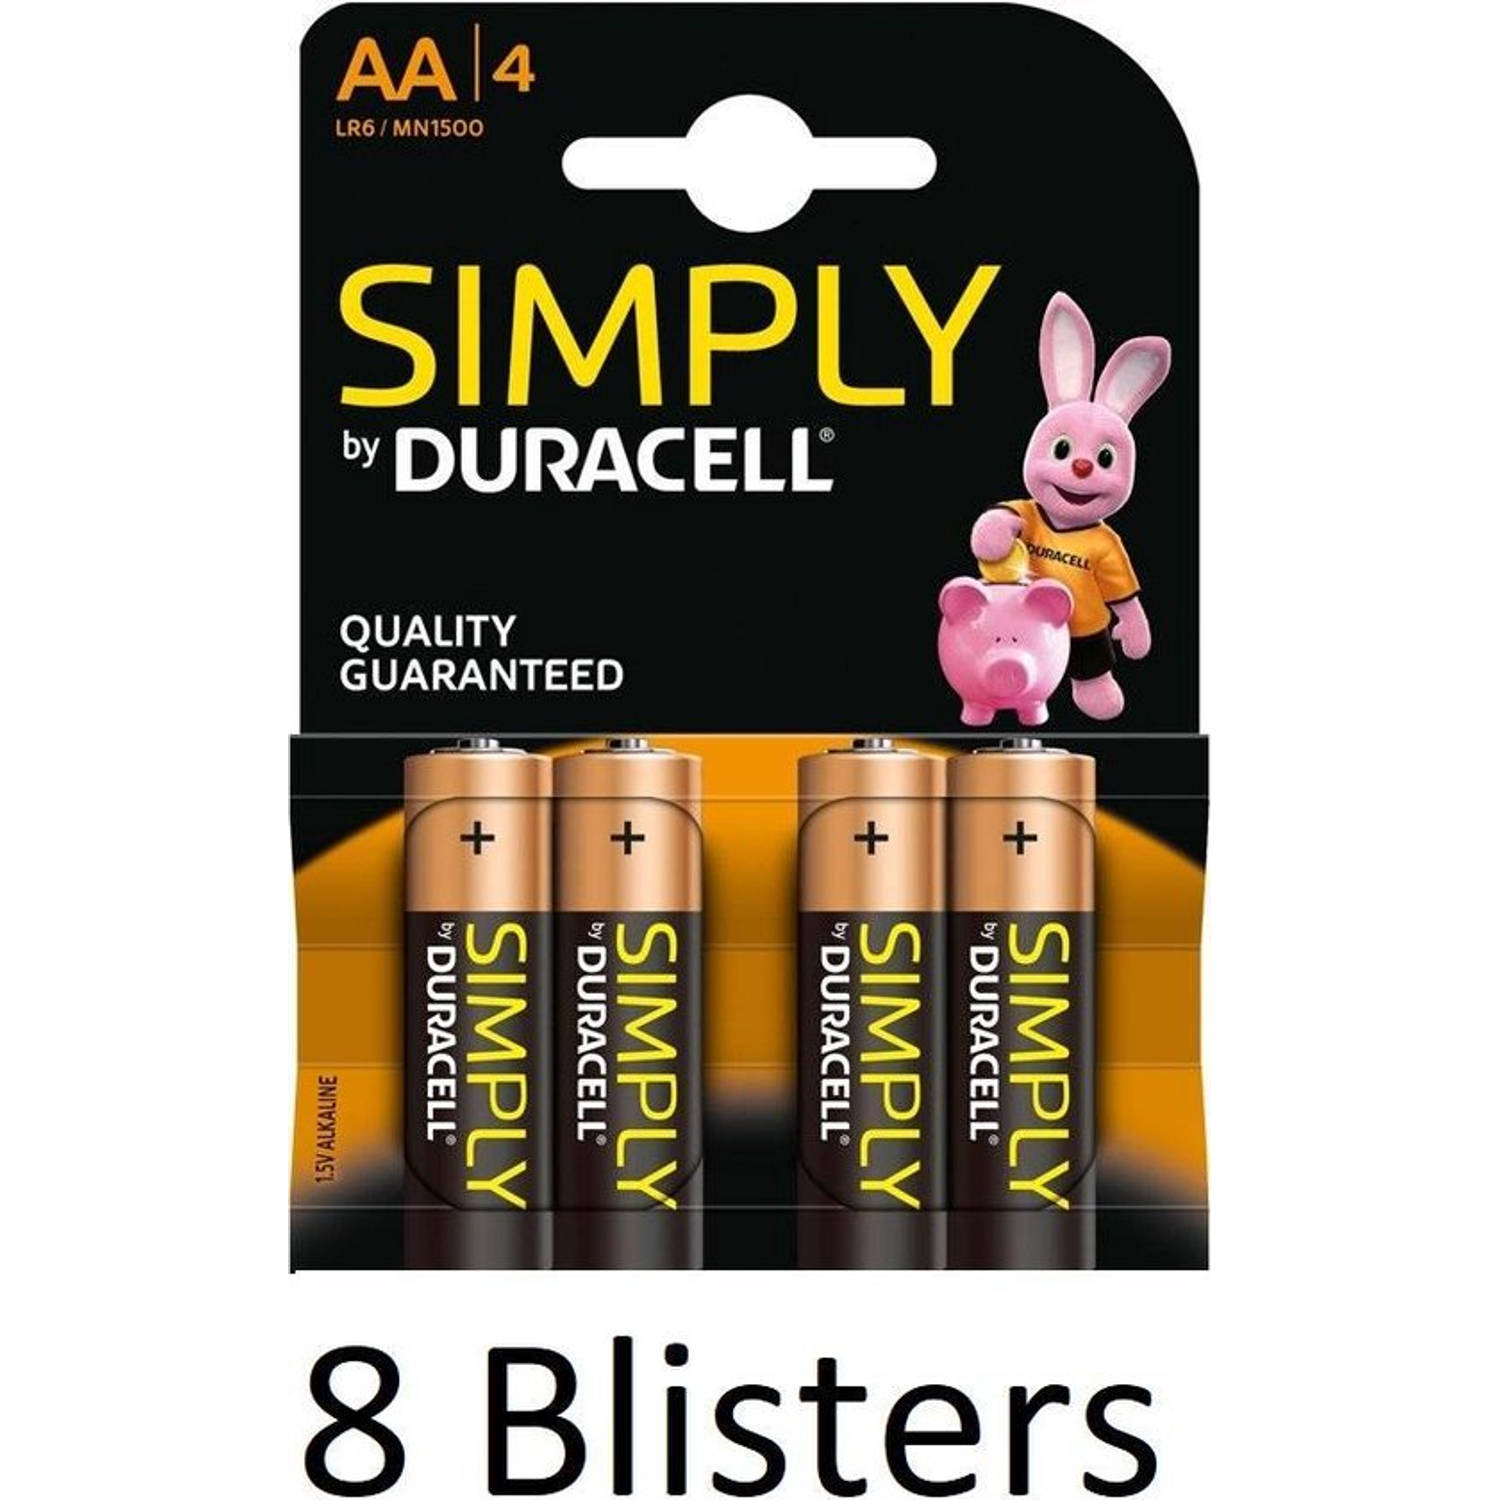 32 Stuks (8 Blisters a 4 st) Duracell AA SIMPLY Batterijen